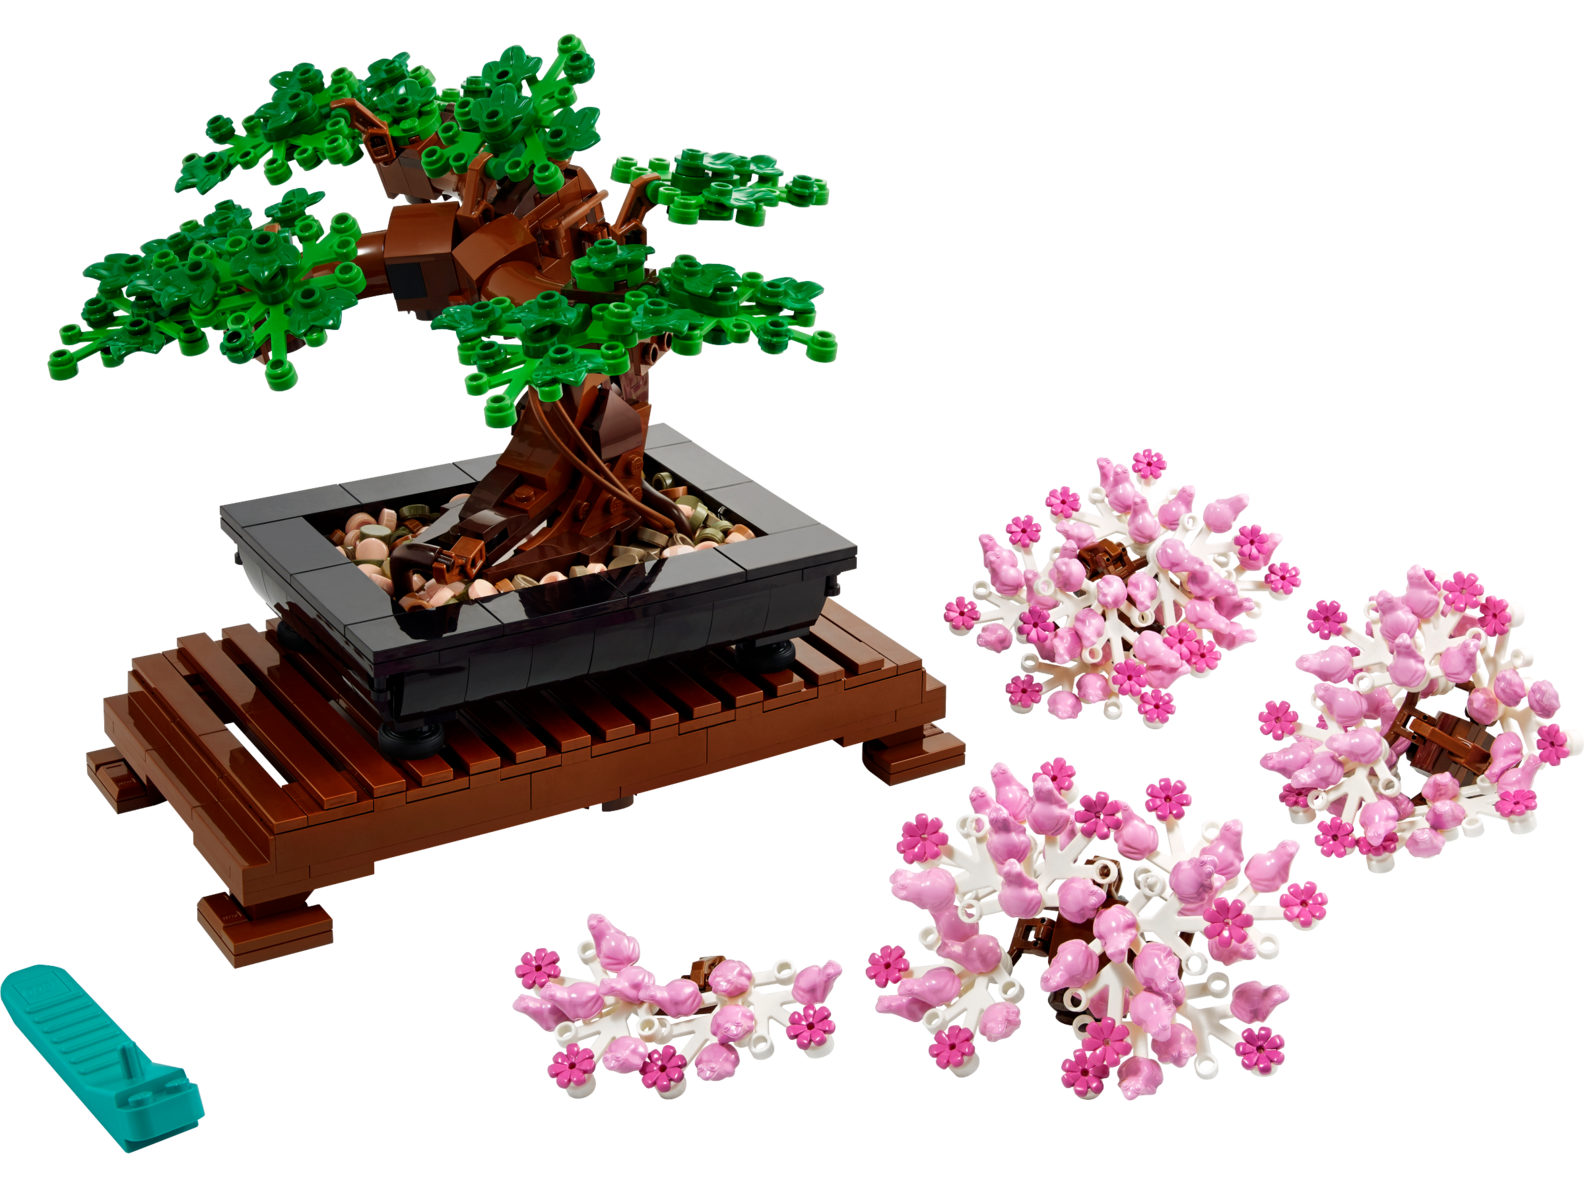 Bonsaitræ på tilbud til 449,95 kr. hos Lego